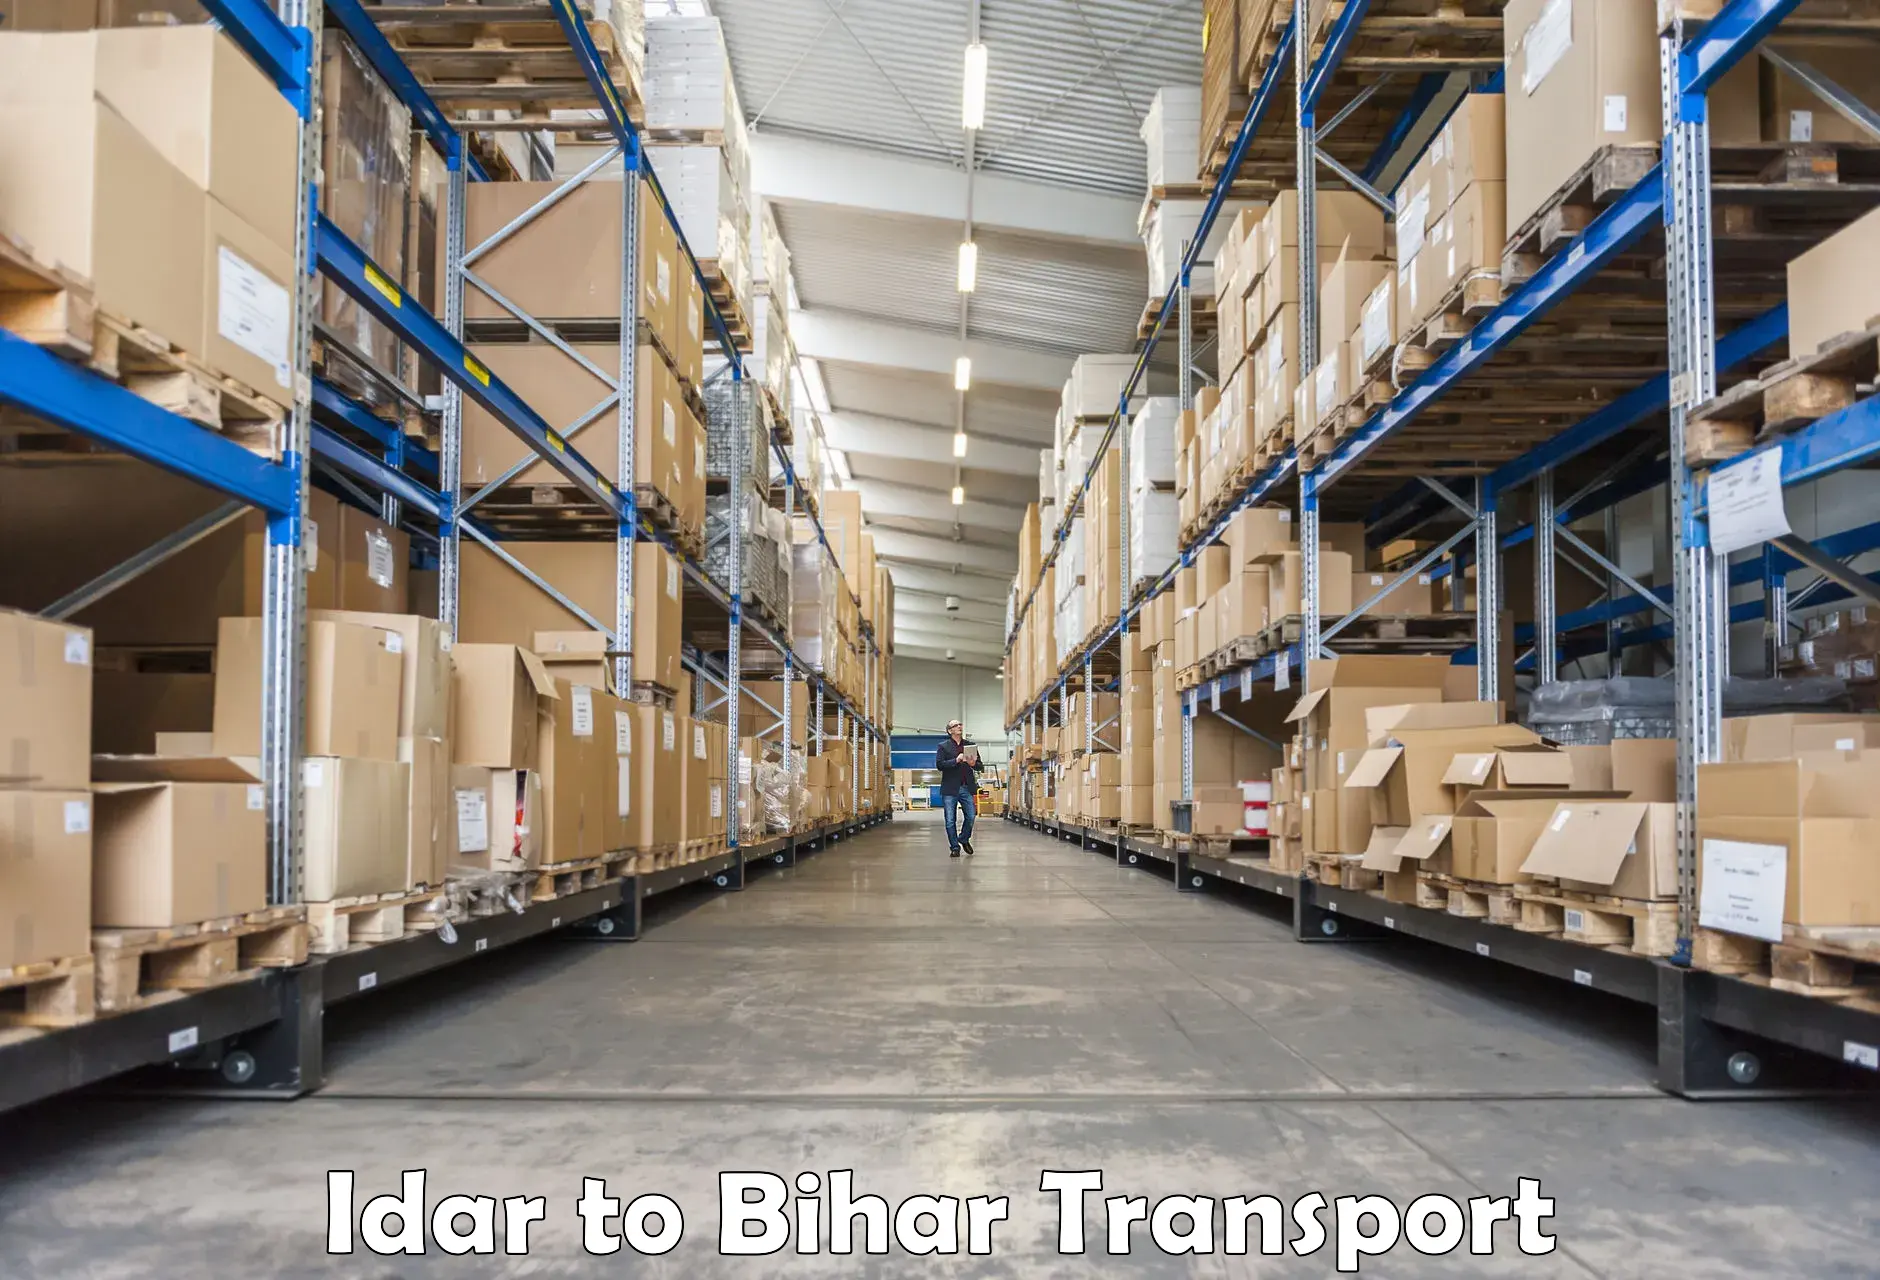 Online transport booking Idar to Bihar